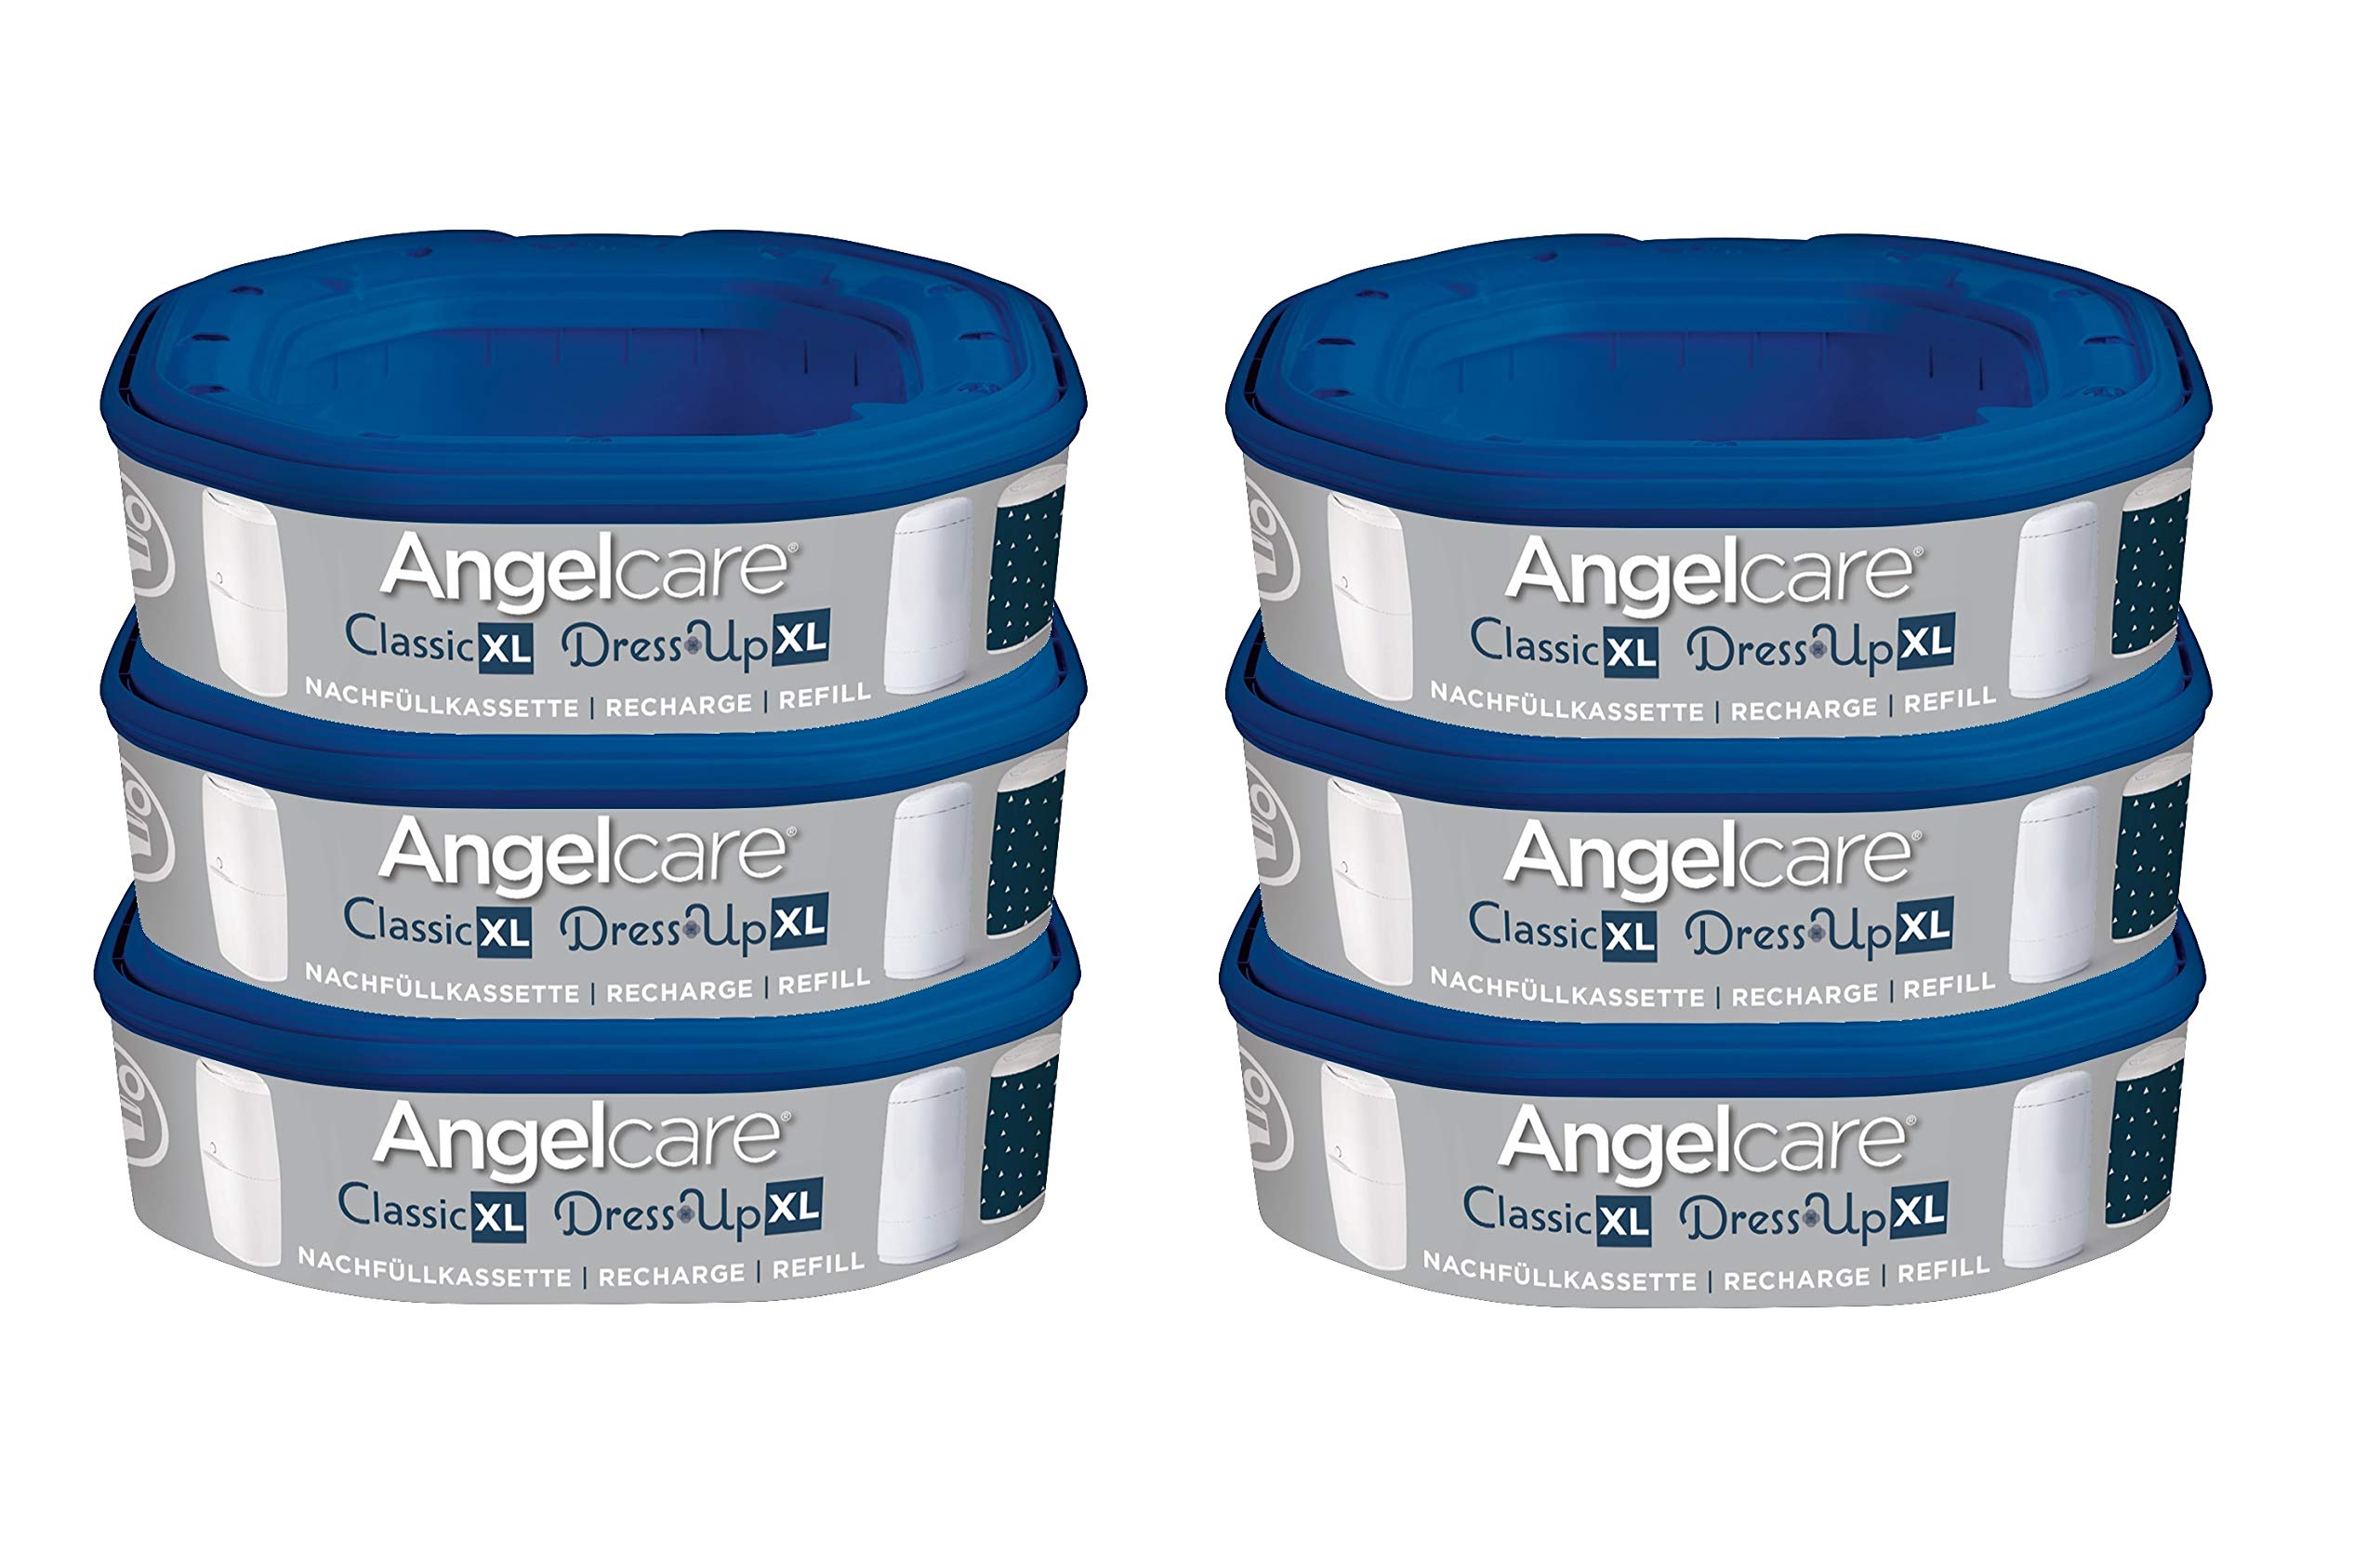 Angelcare Nachfüllkassette für Windeleimer Dress-Up und Classic XL 6er Pack